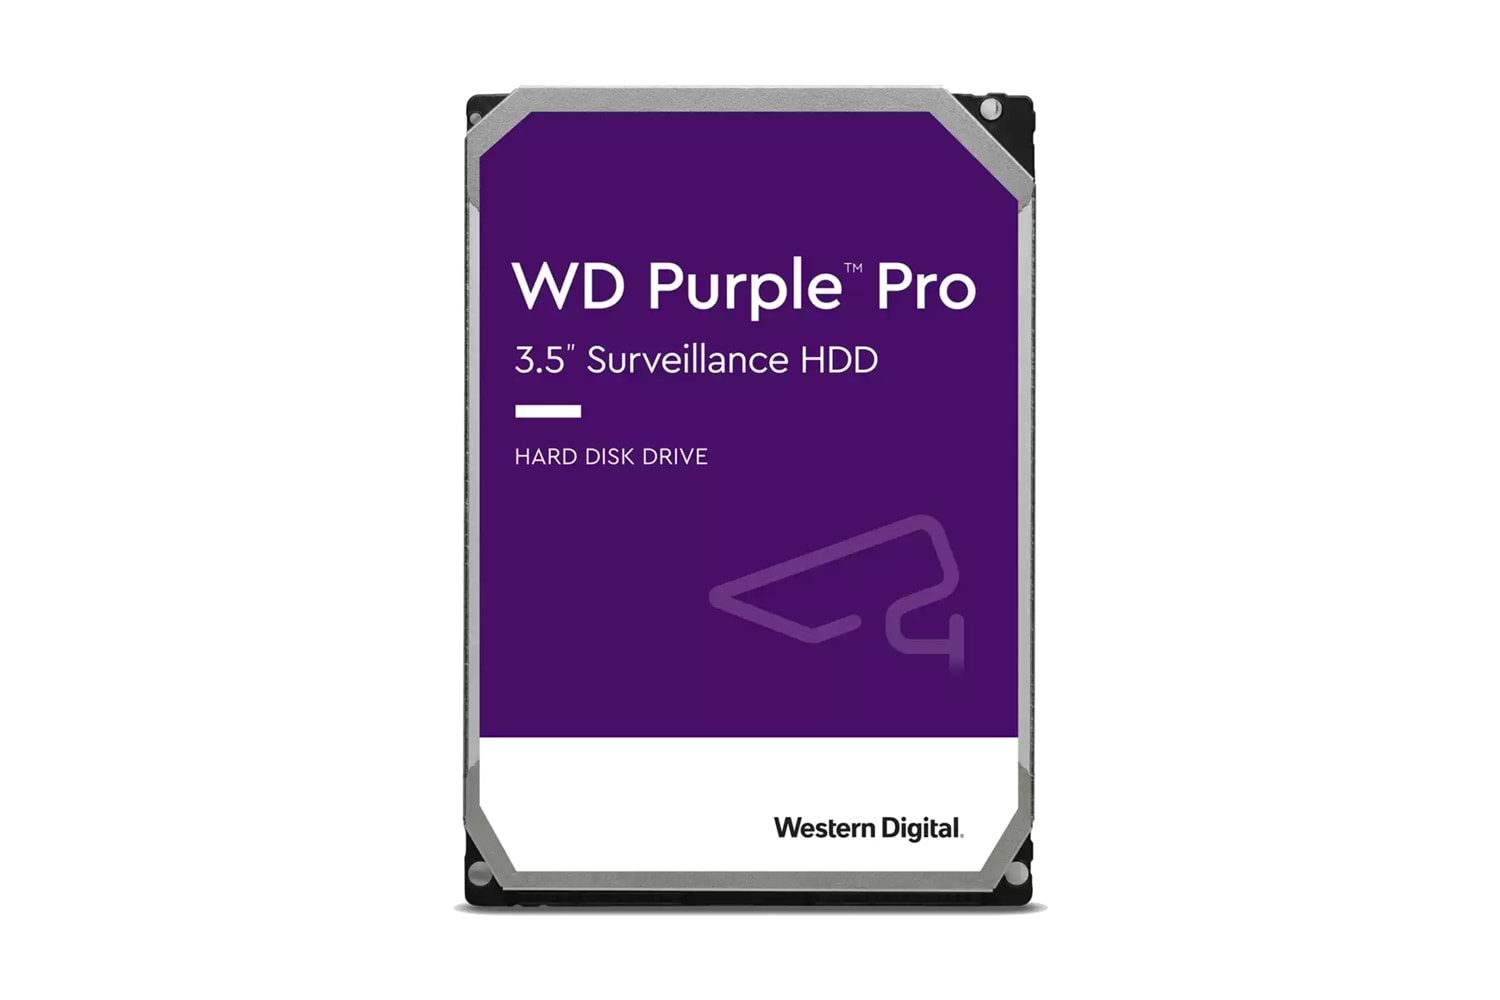 WD Purple WD101PURP 3.5